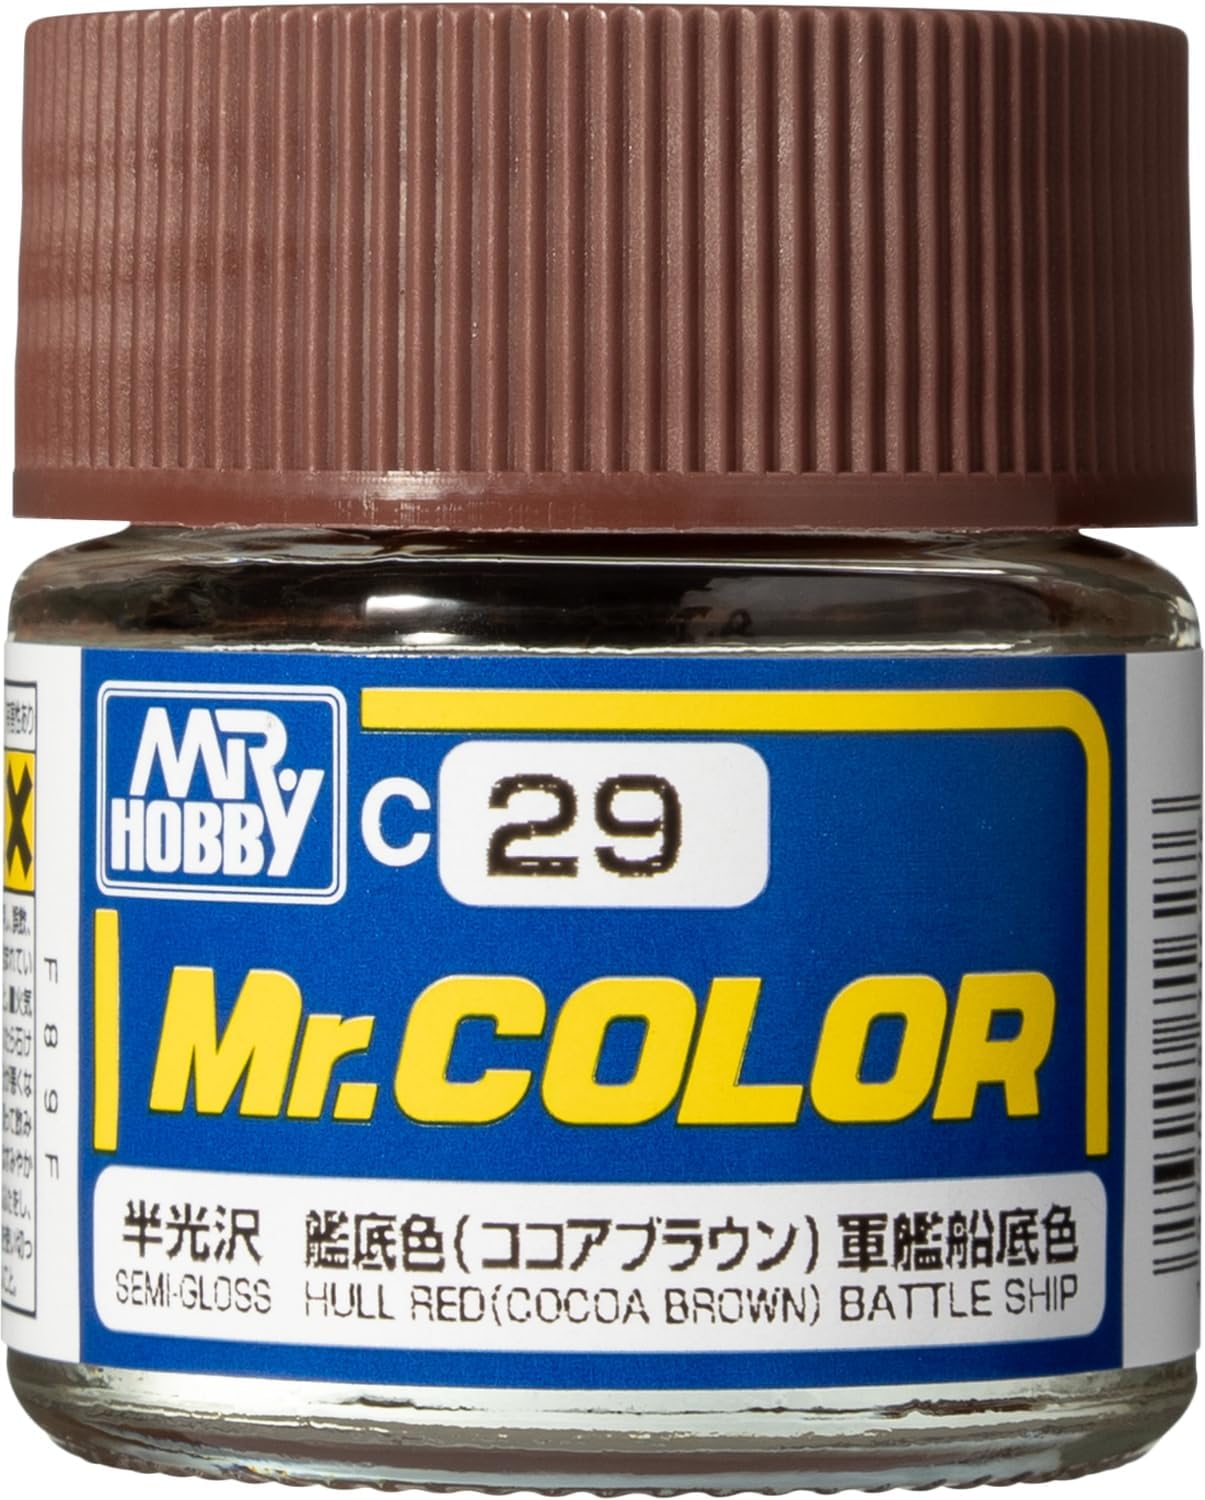 Mr. Hobby Mr. Color C29 Semi-Gloss Hull Red 10ml Bottle